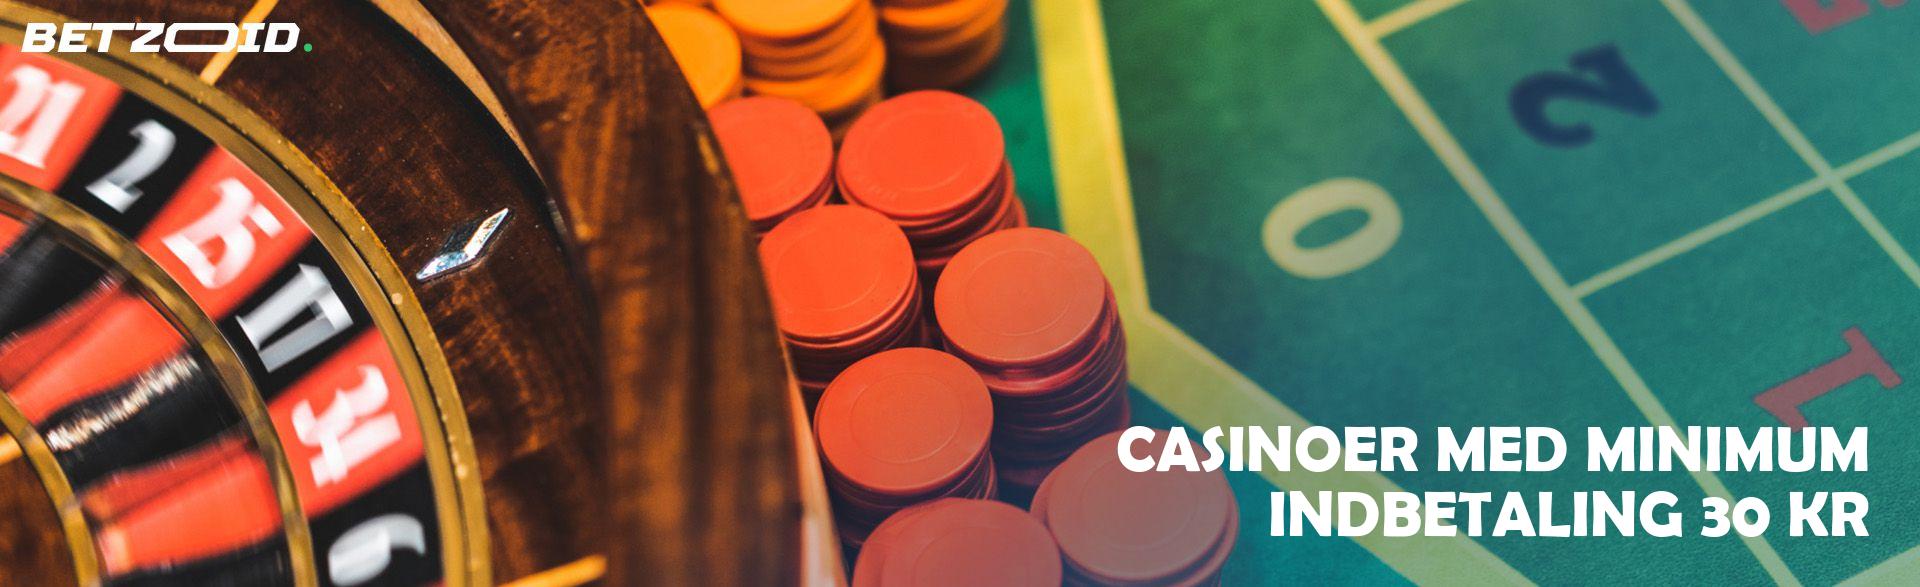 Casinoer Med Minimum Indbetaling 30 Kr.